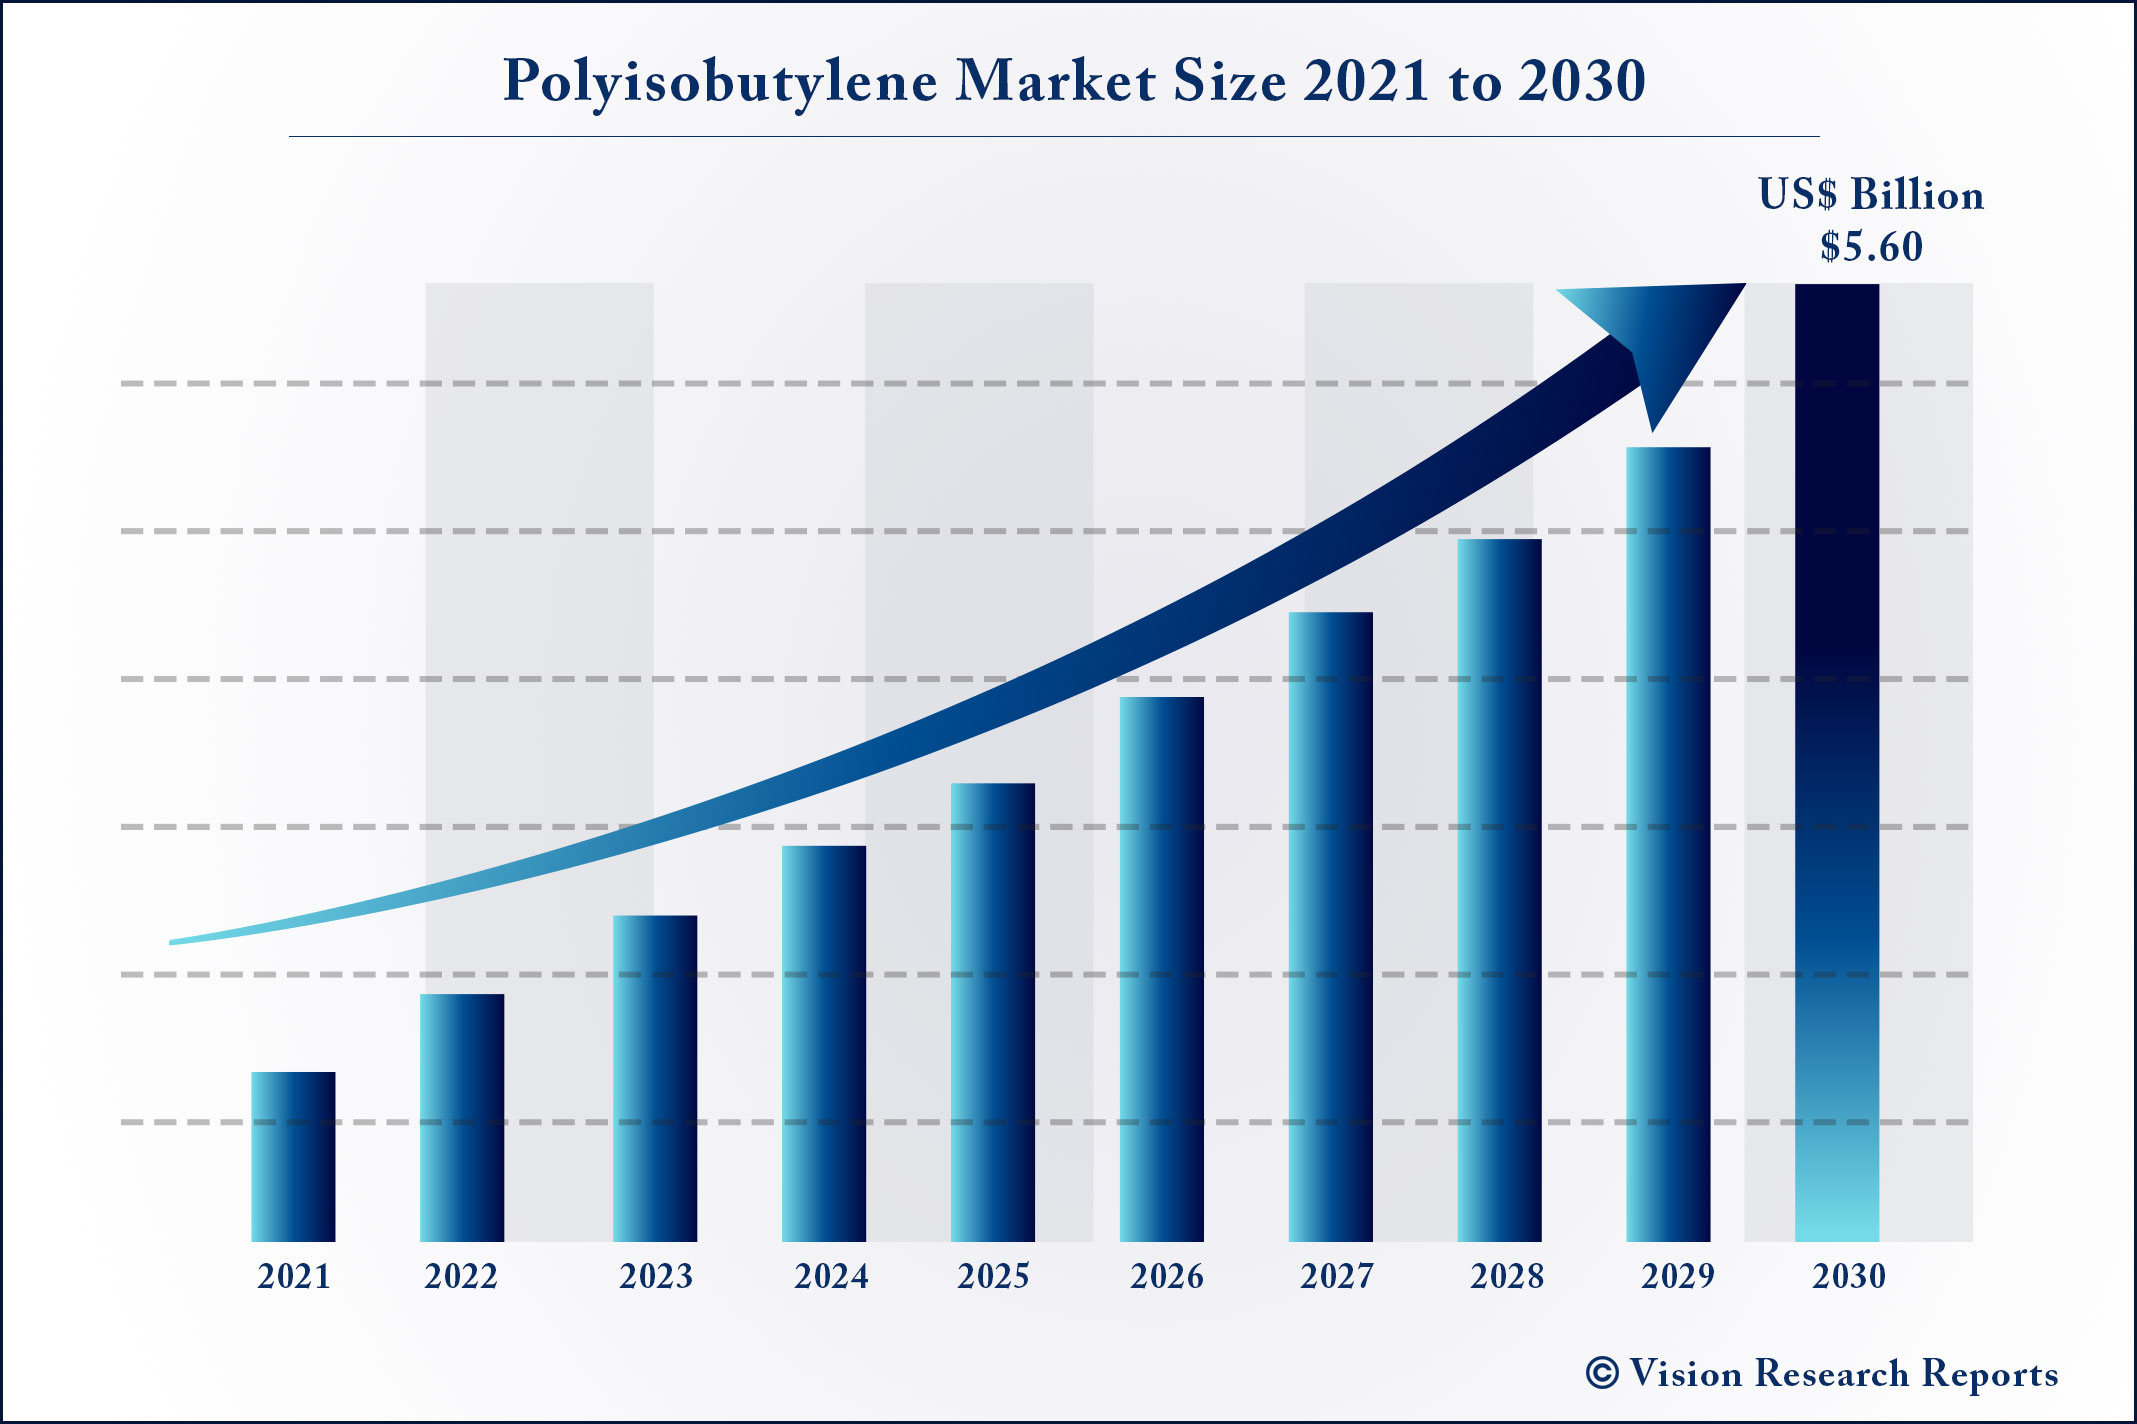 Polyisobutylene Market Size 2021 to 2030